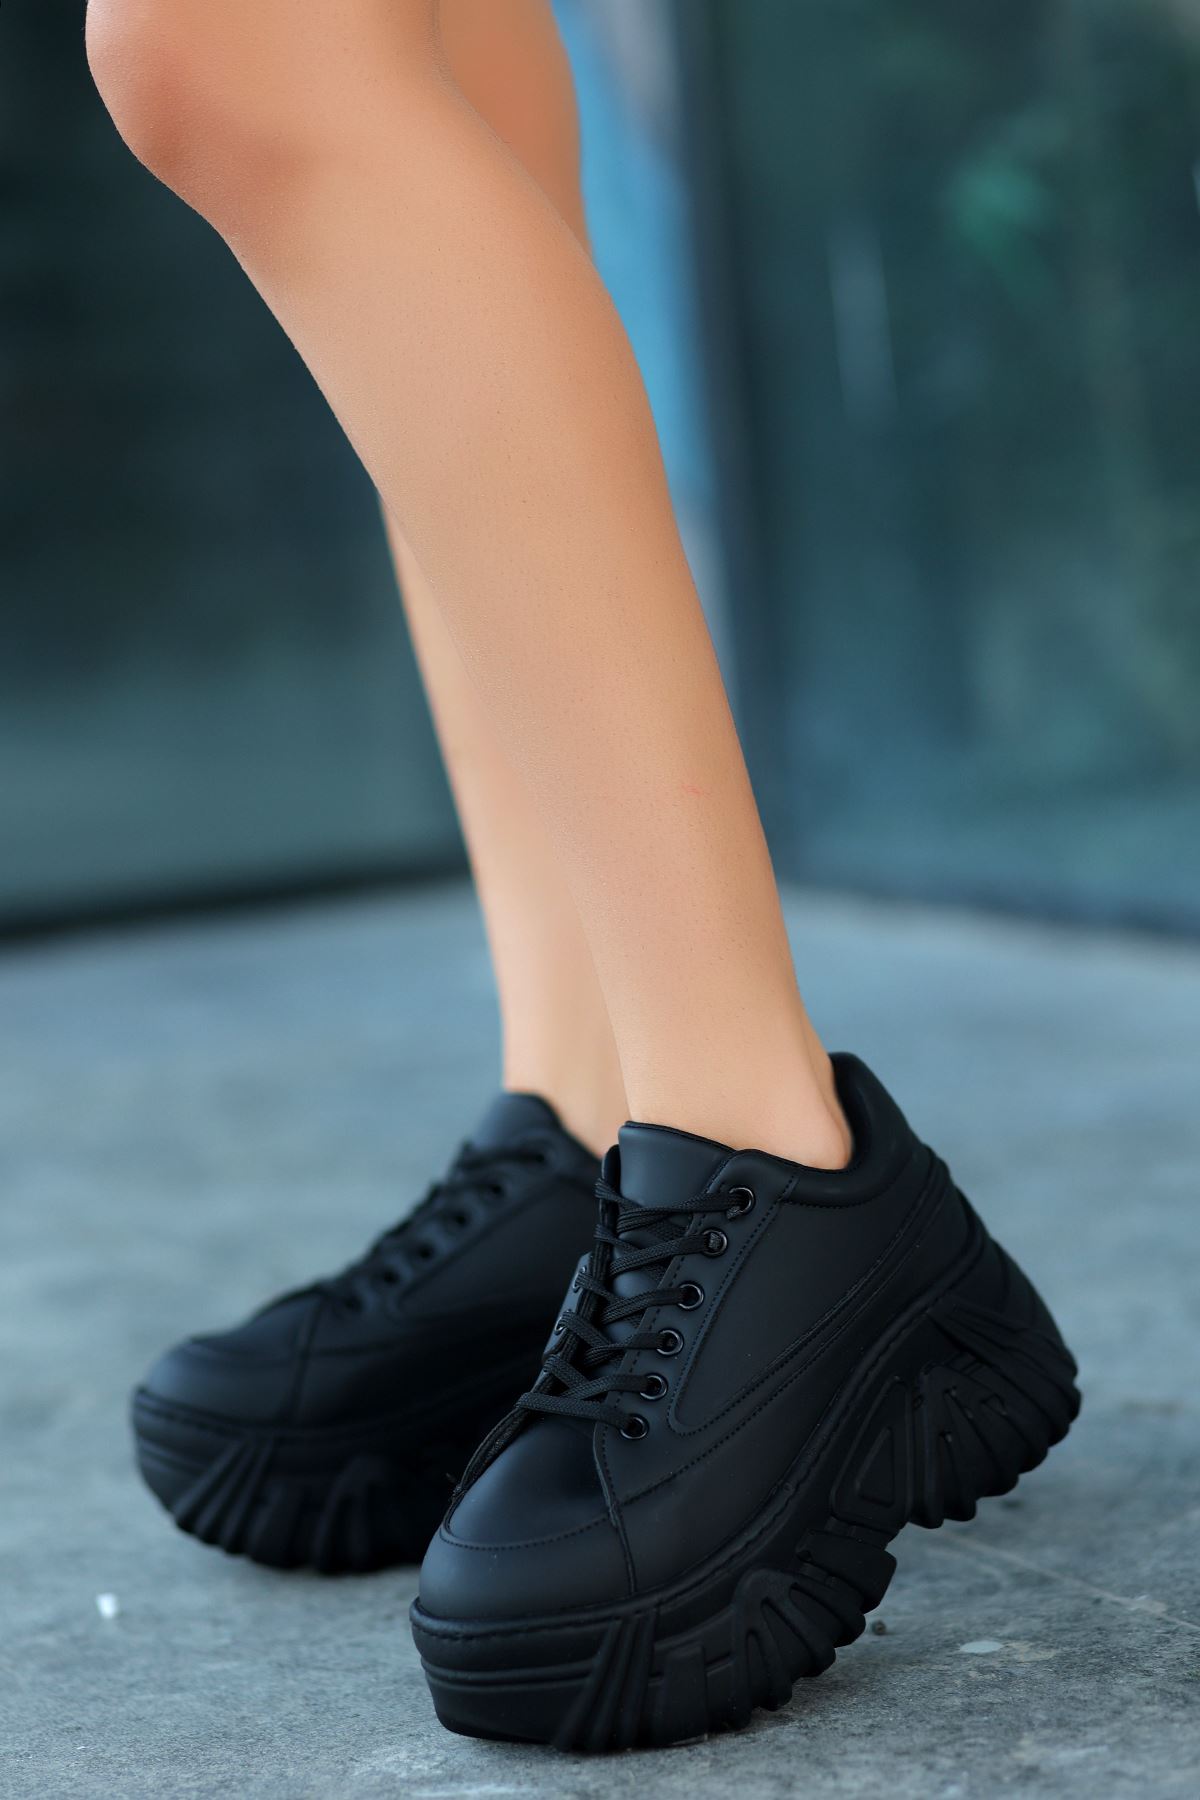 Erma Mat Deri Detaylı Bağcıklı Kadın Spor Ayakkabı Siyah